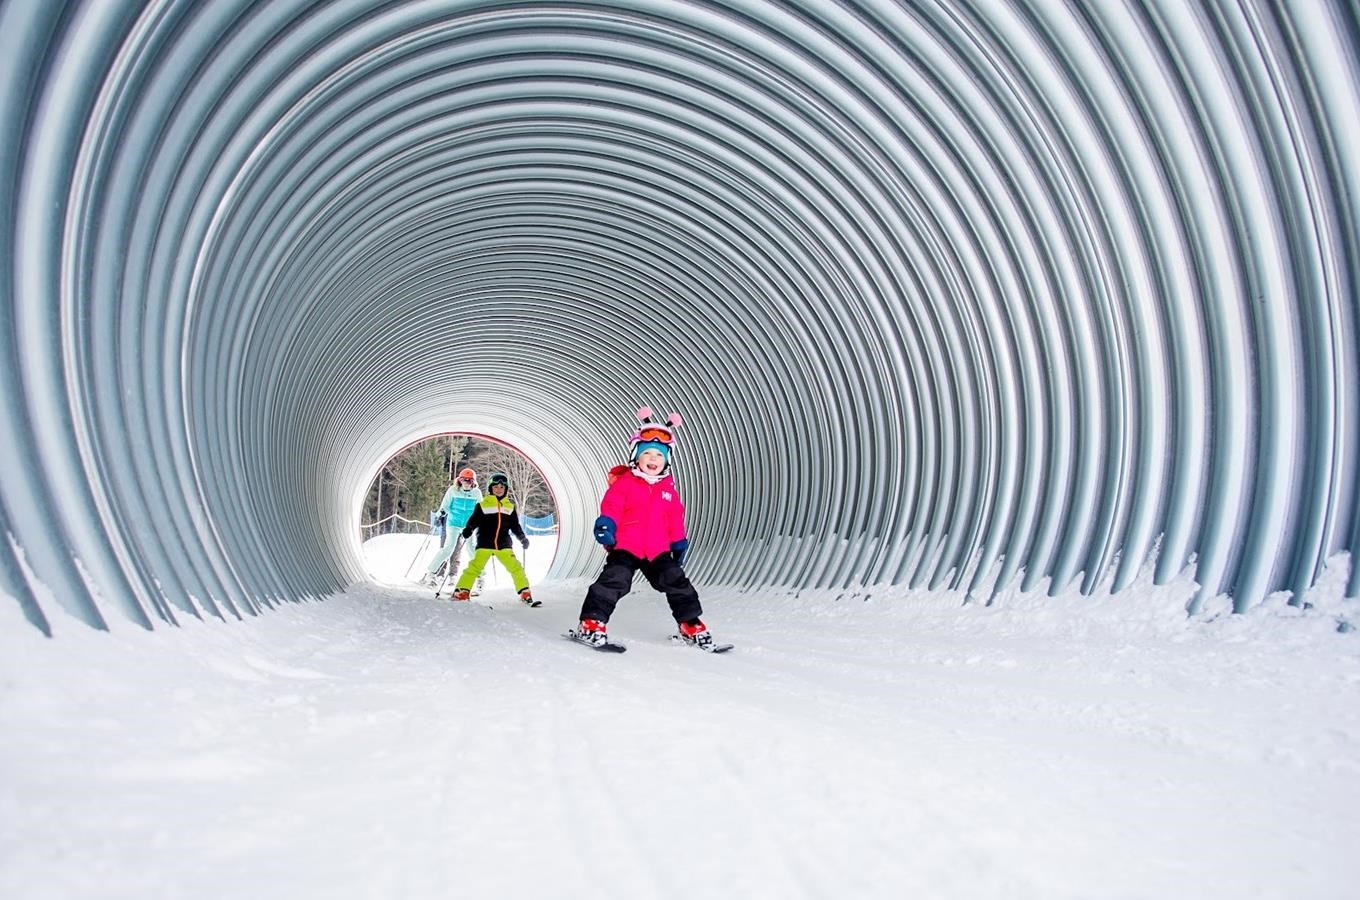 Užijte si letos pohodové rodinné lyžování ve Skiareálu Lipno